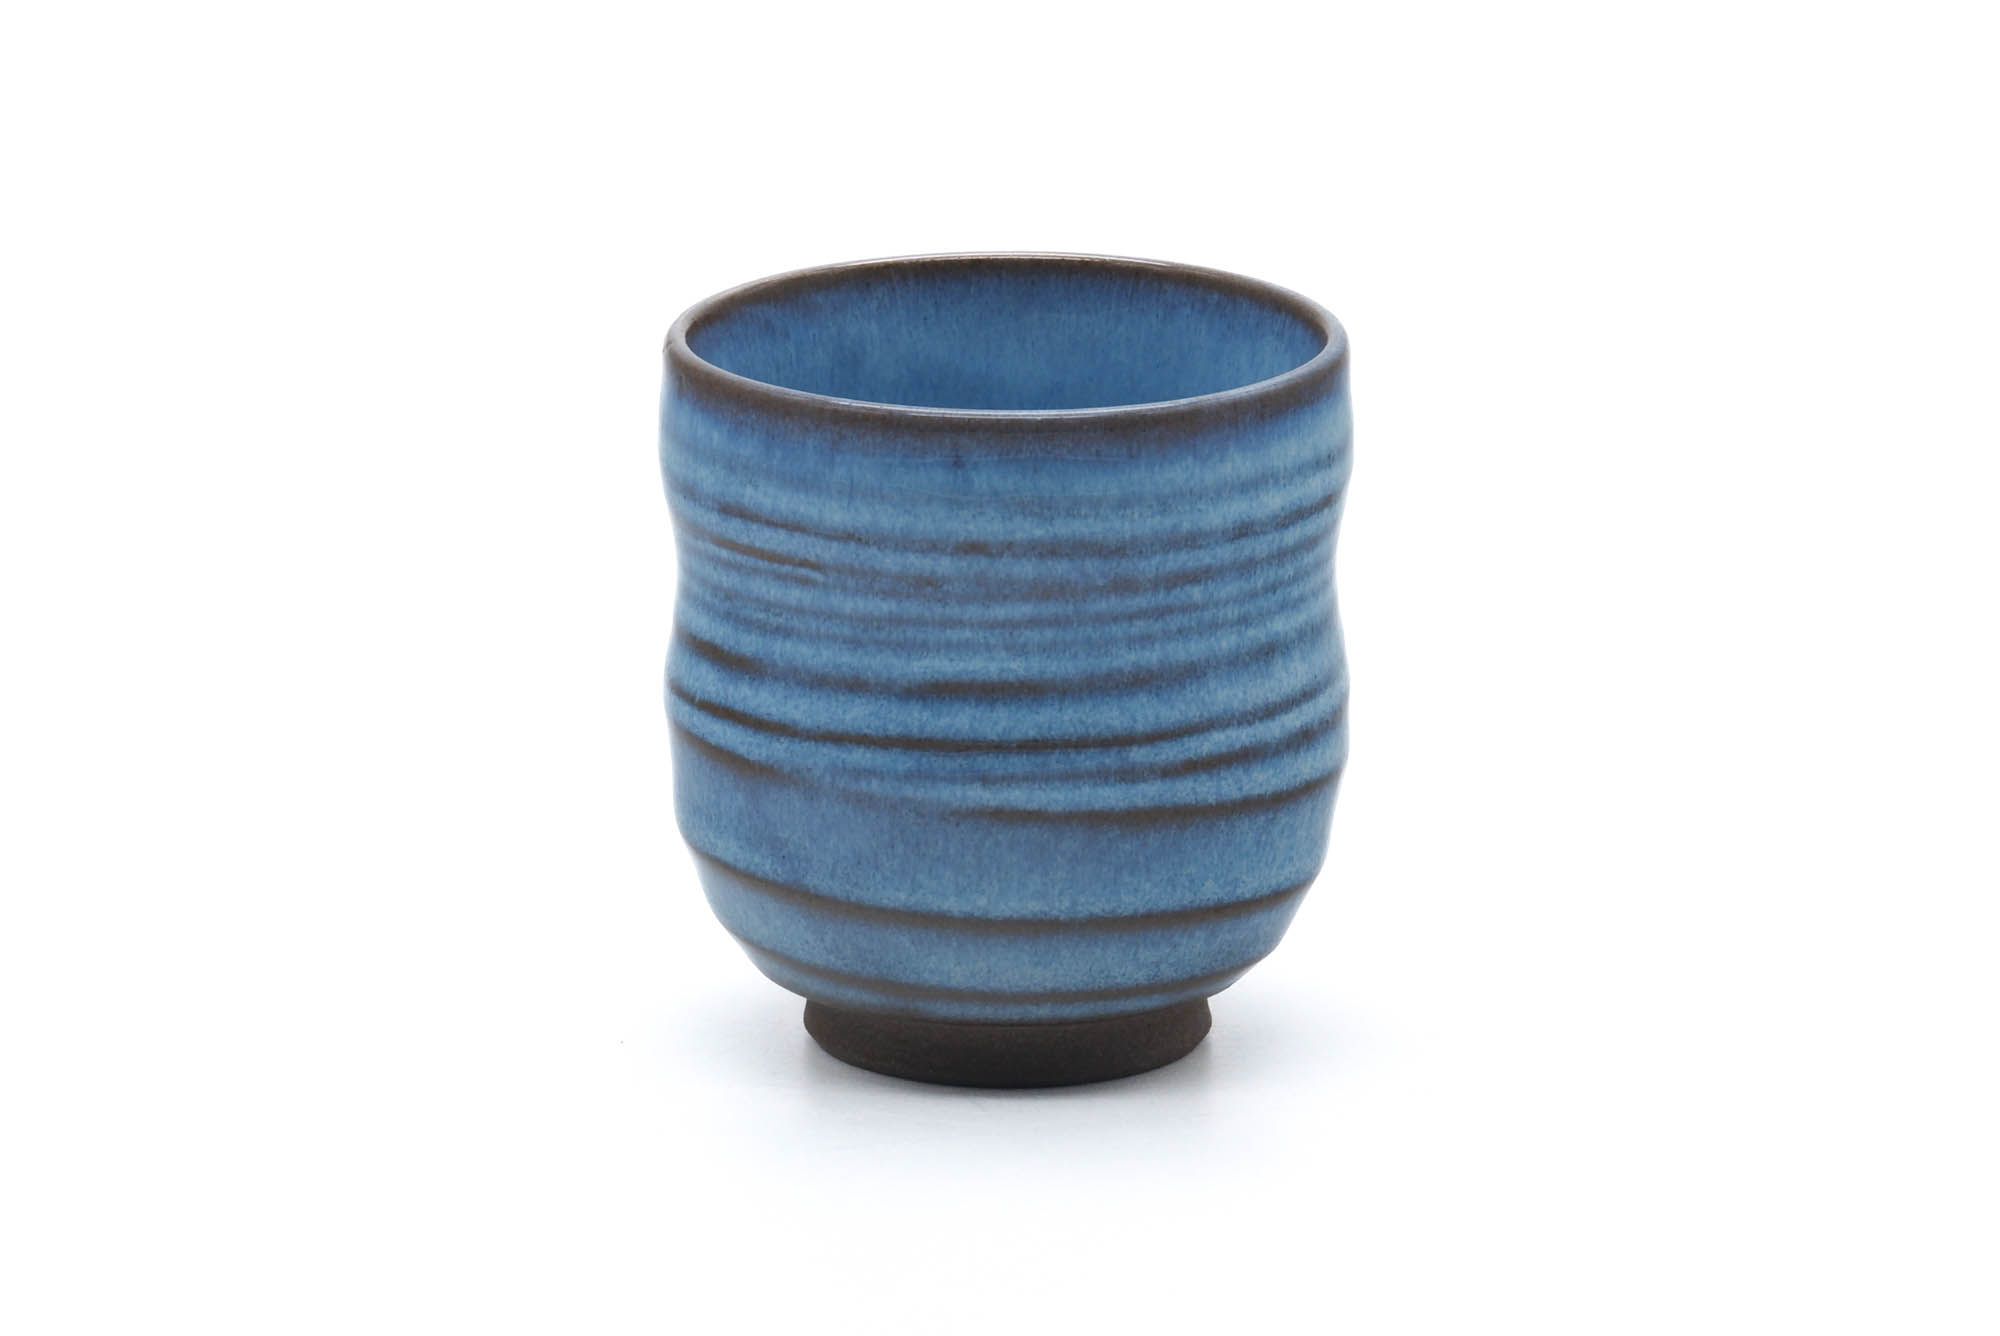 Japanese Teacup - Ocean Blue Glazed Spiraling Yunomi - 180ml